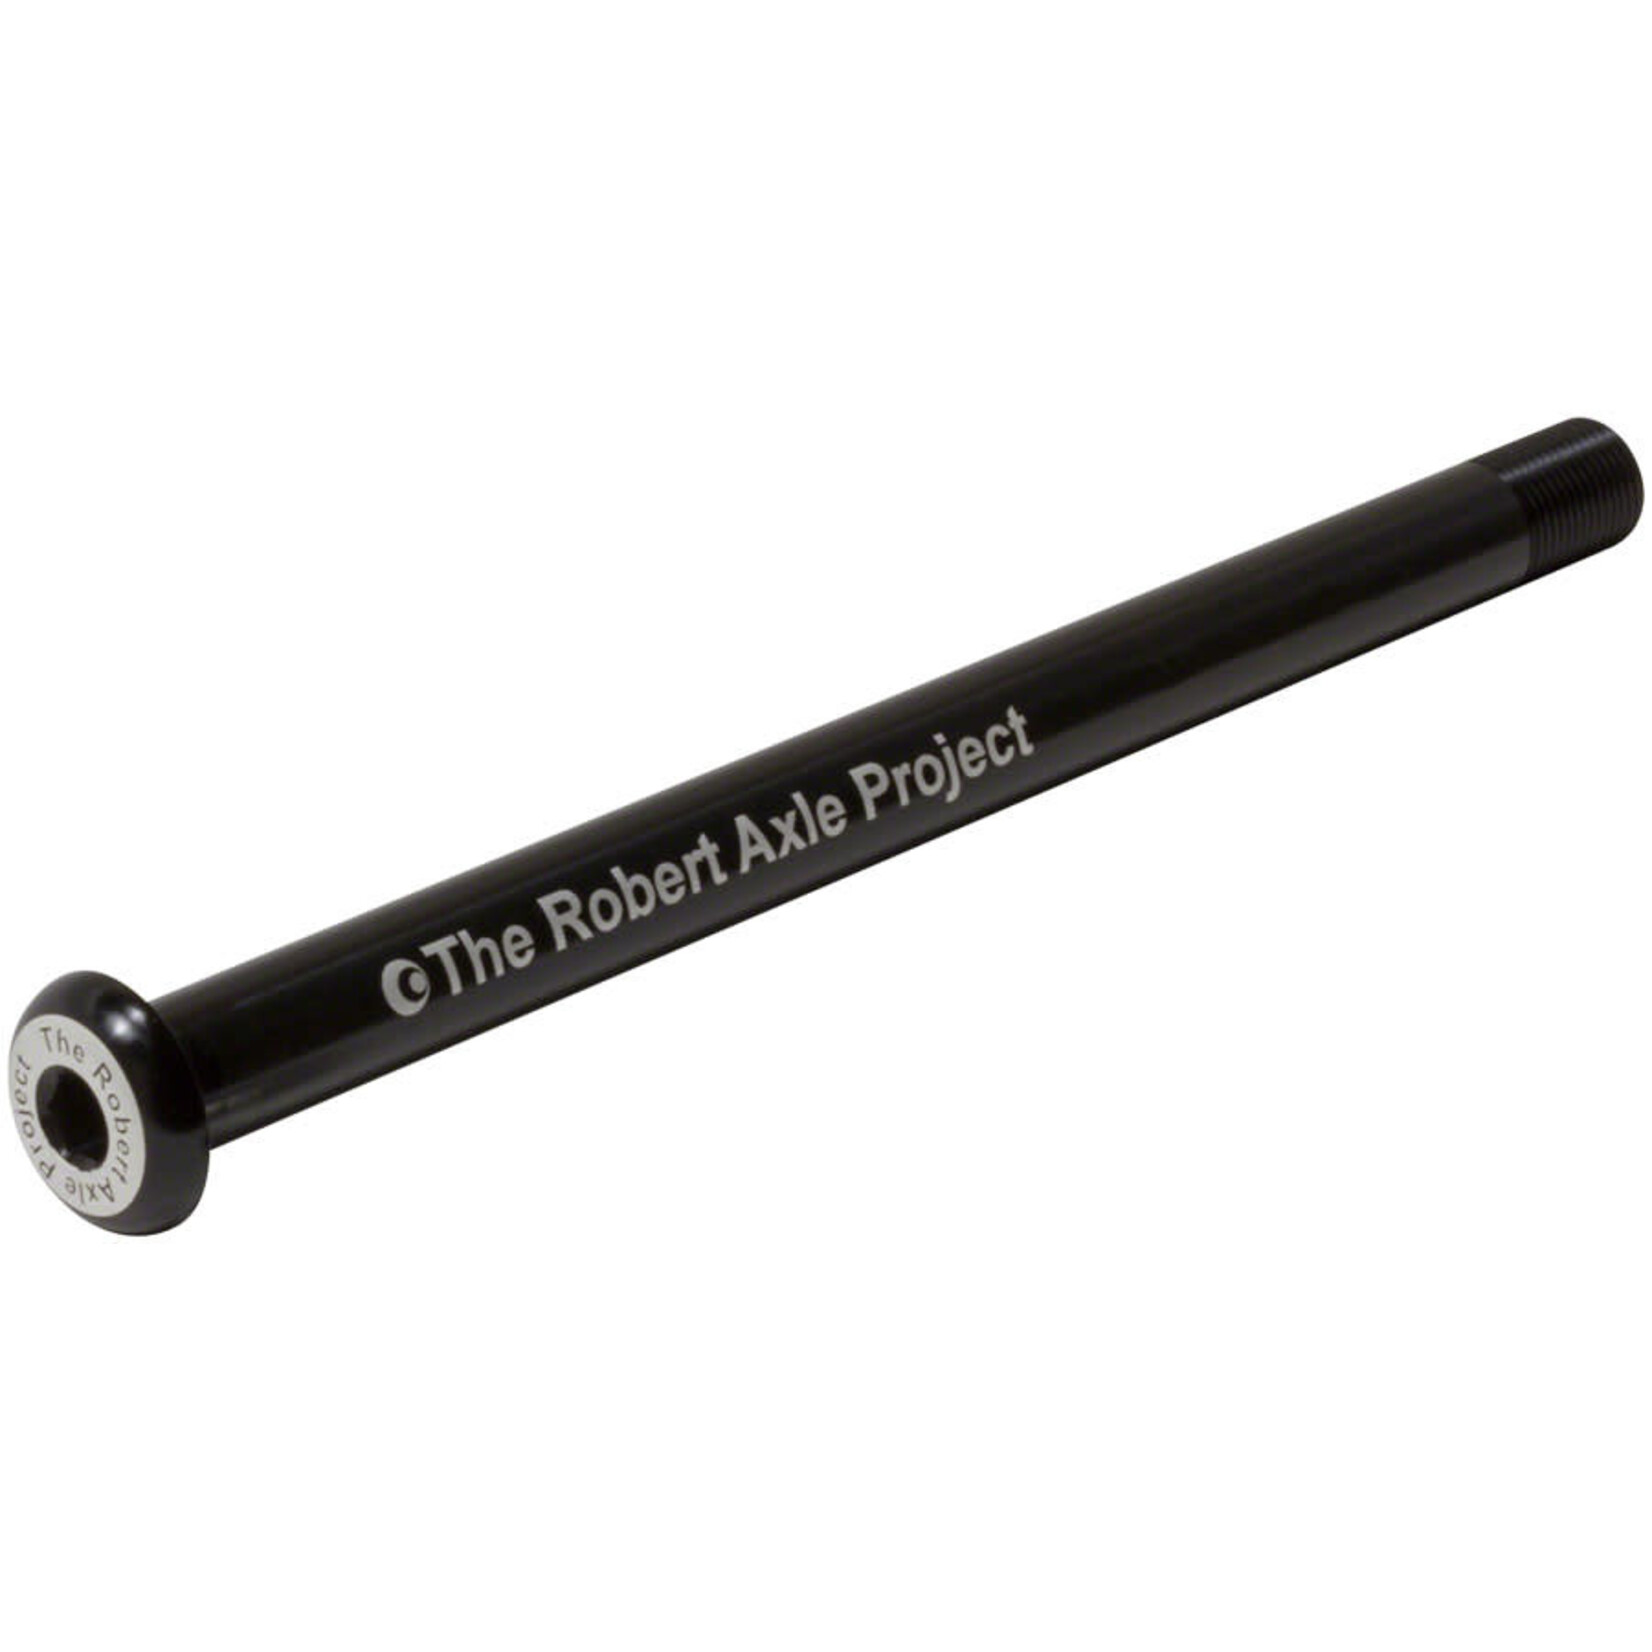 Robert Axle Project Robert Axle Project 12mm Lightning Bolt Thru Axle - Rear - Length: 174mm Thread: 1.75mm